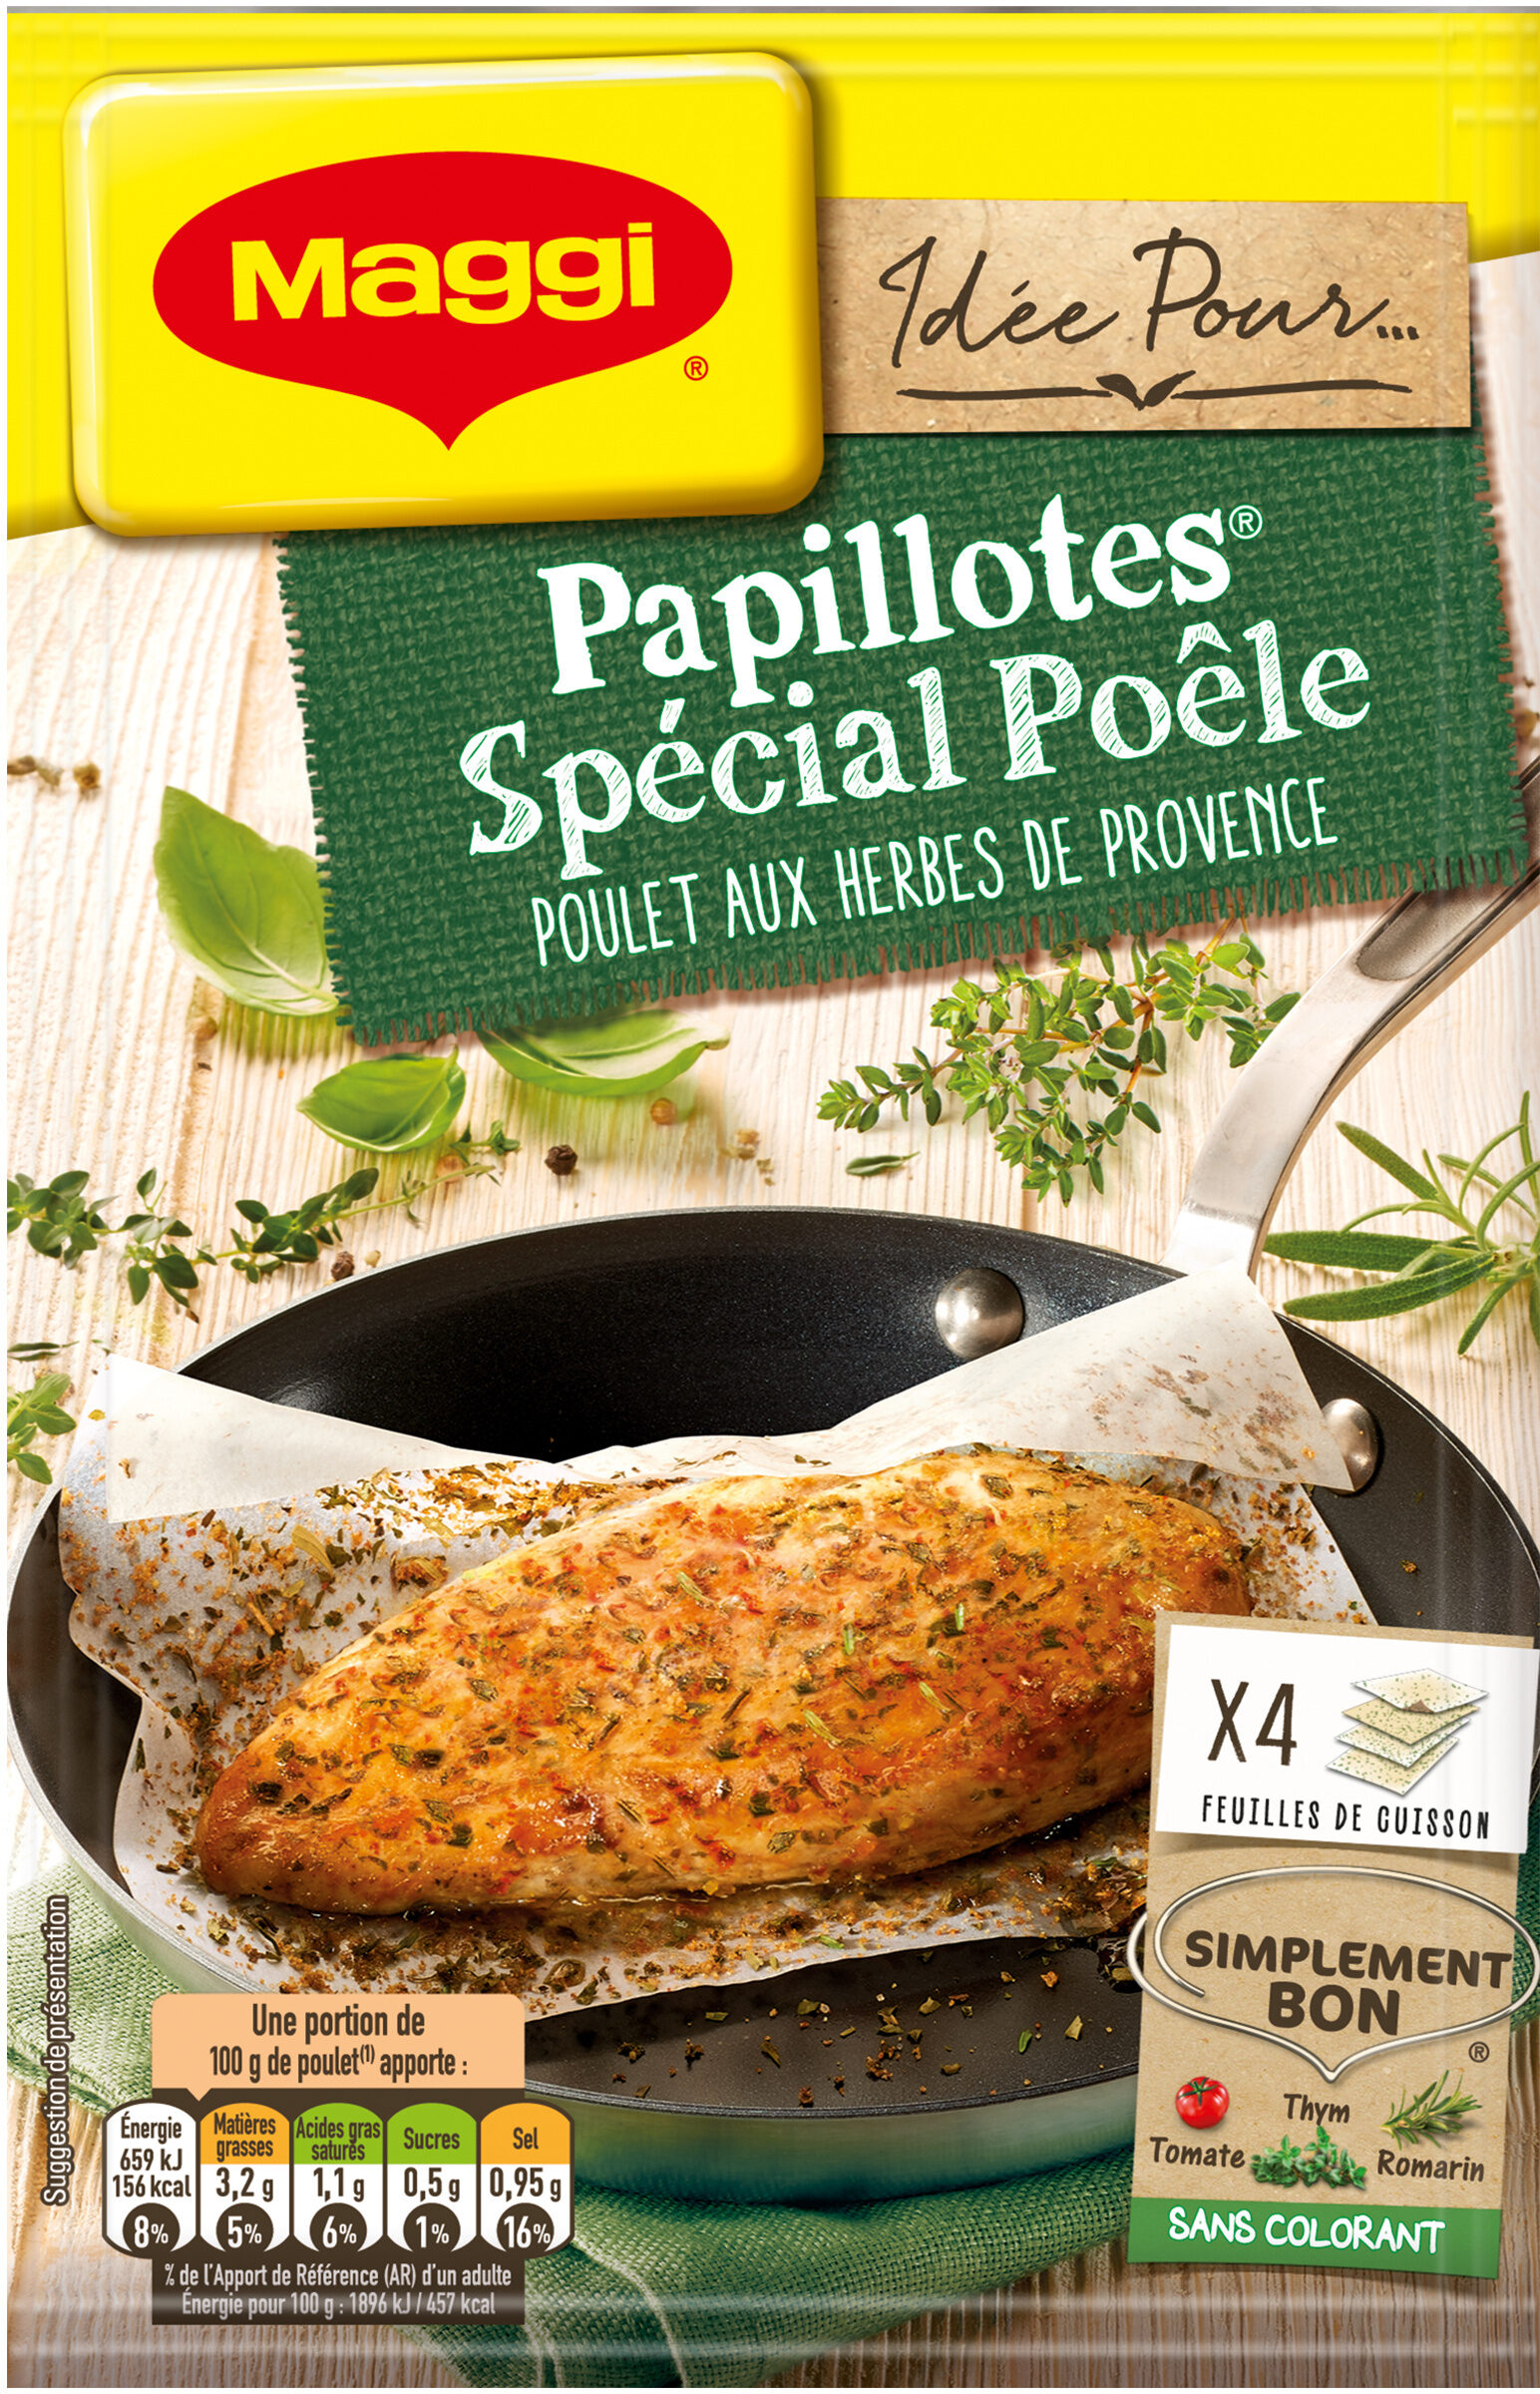 MAGGI Papillotes Spécial Poêle Poulet Herbes de Provence - Produit - fr